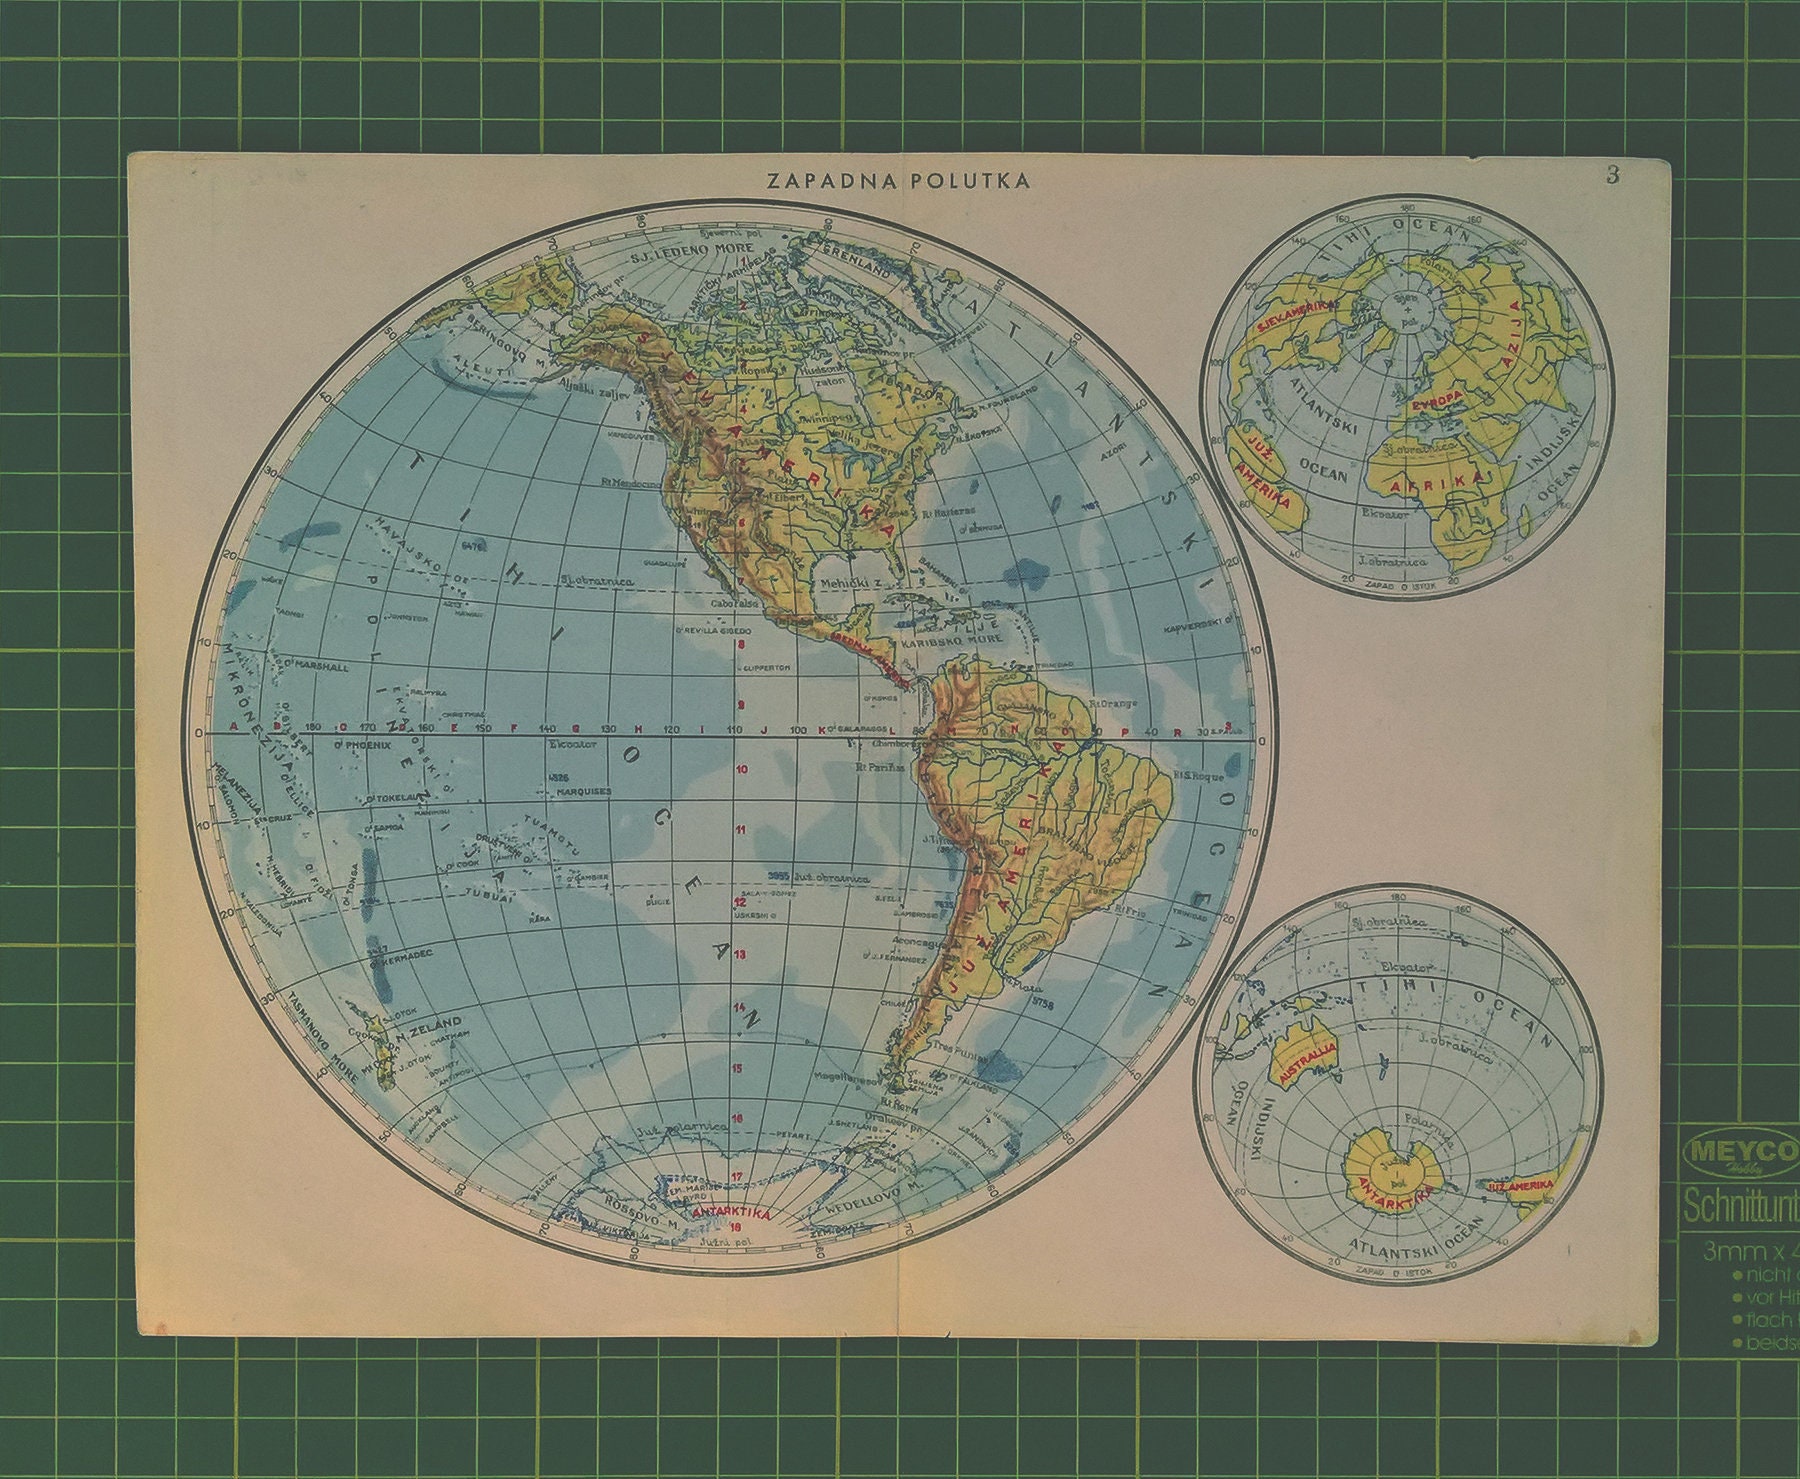 Материки лежащие в южном полушарии. Физическая карта полушарий. Западное полушарие. Южное полушарие.